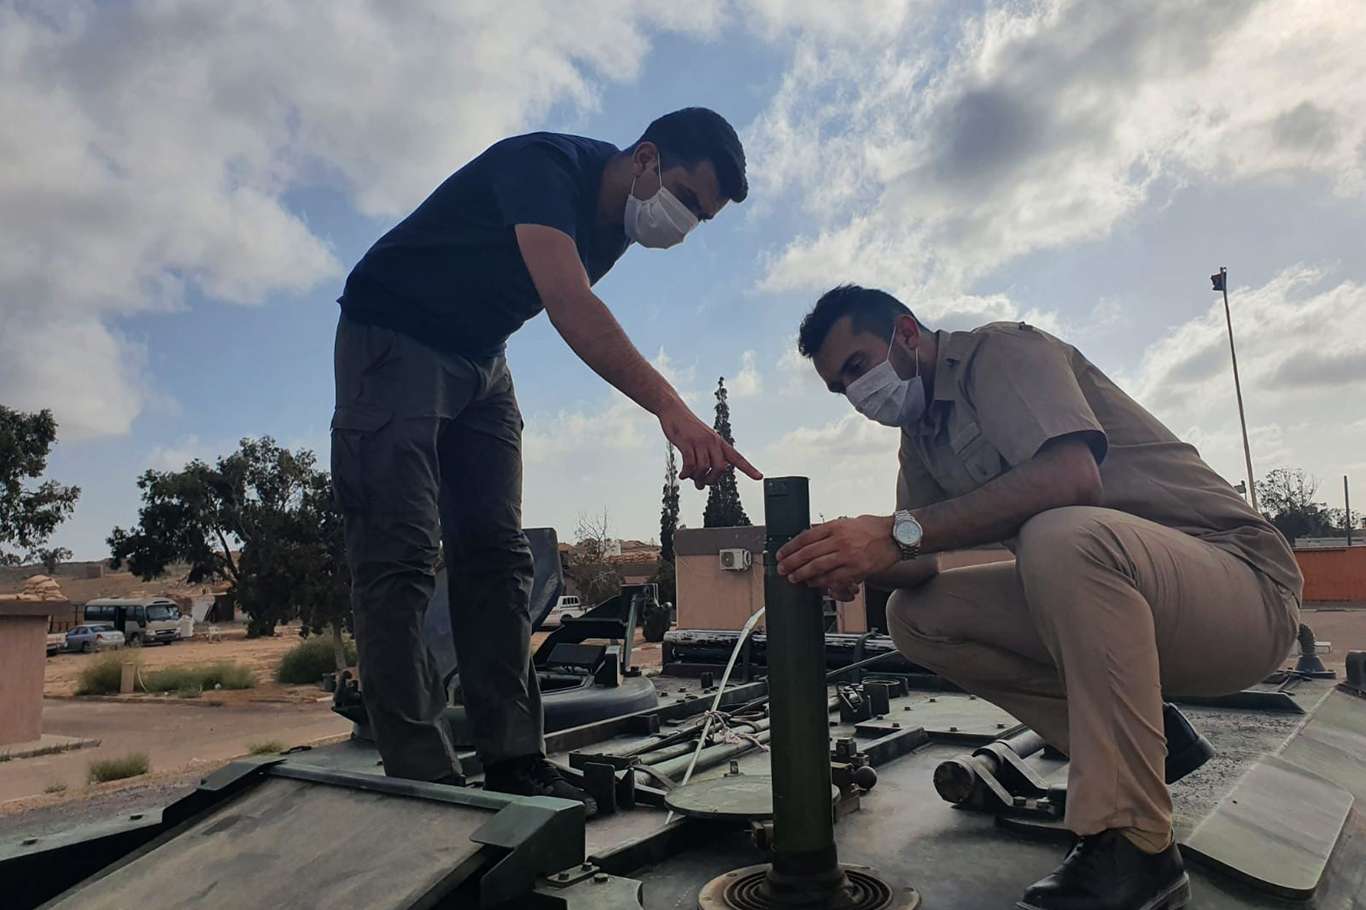  Libya'da askeri eğitimler devam ediyor